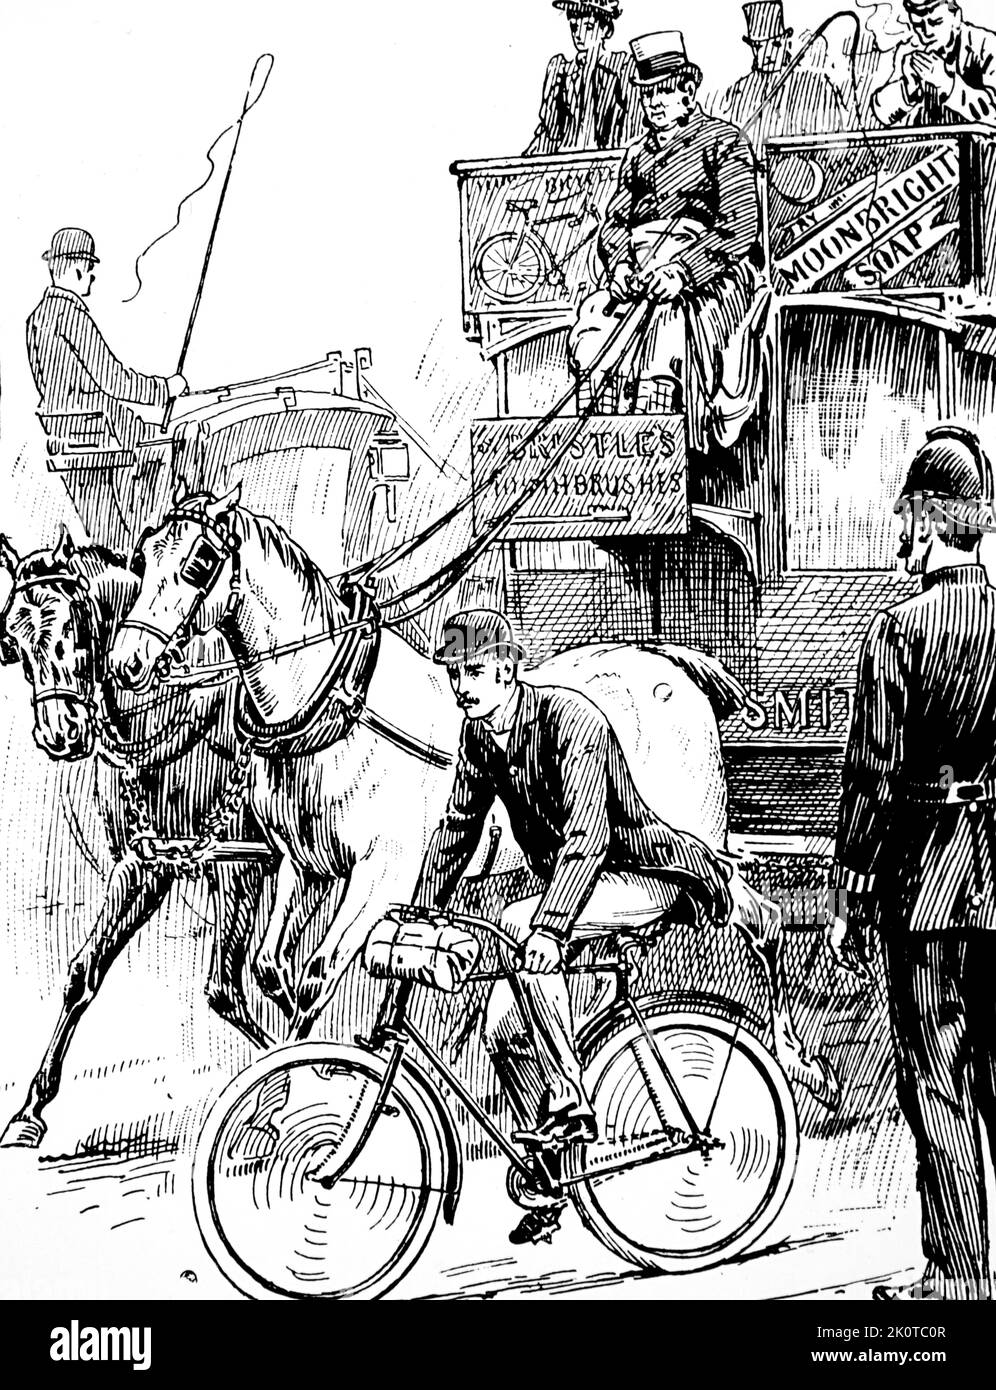 Illustrazione di un ciclista nel traffico di Londra. L'uomo sta guidando una macchina del tipo di sicurezza Rover. Illustrato da Stephen Thomas Dadd (1879-1914) artista inglese. Datato 19th ° secolo Foto Stock